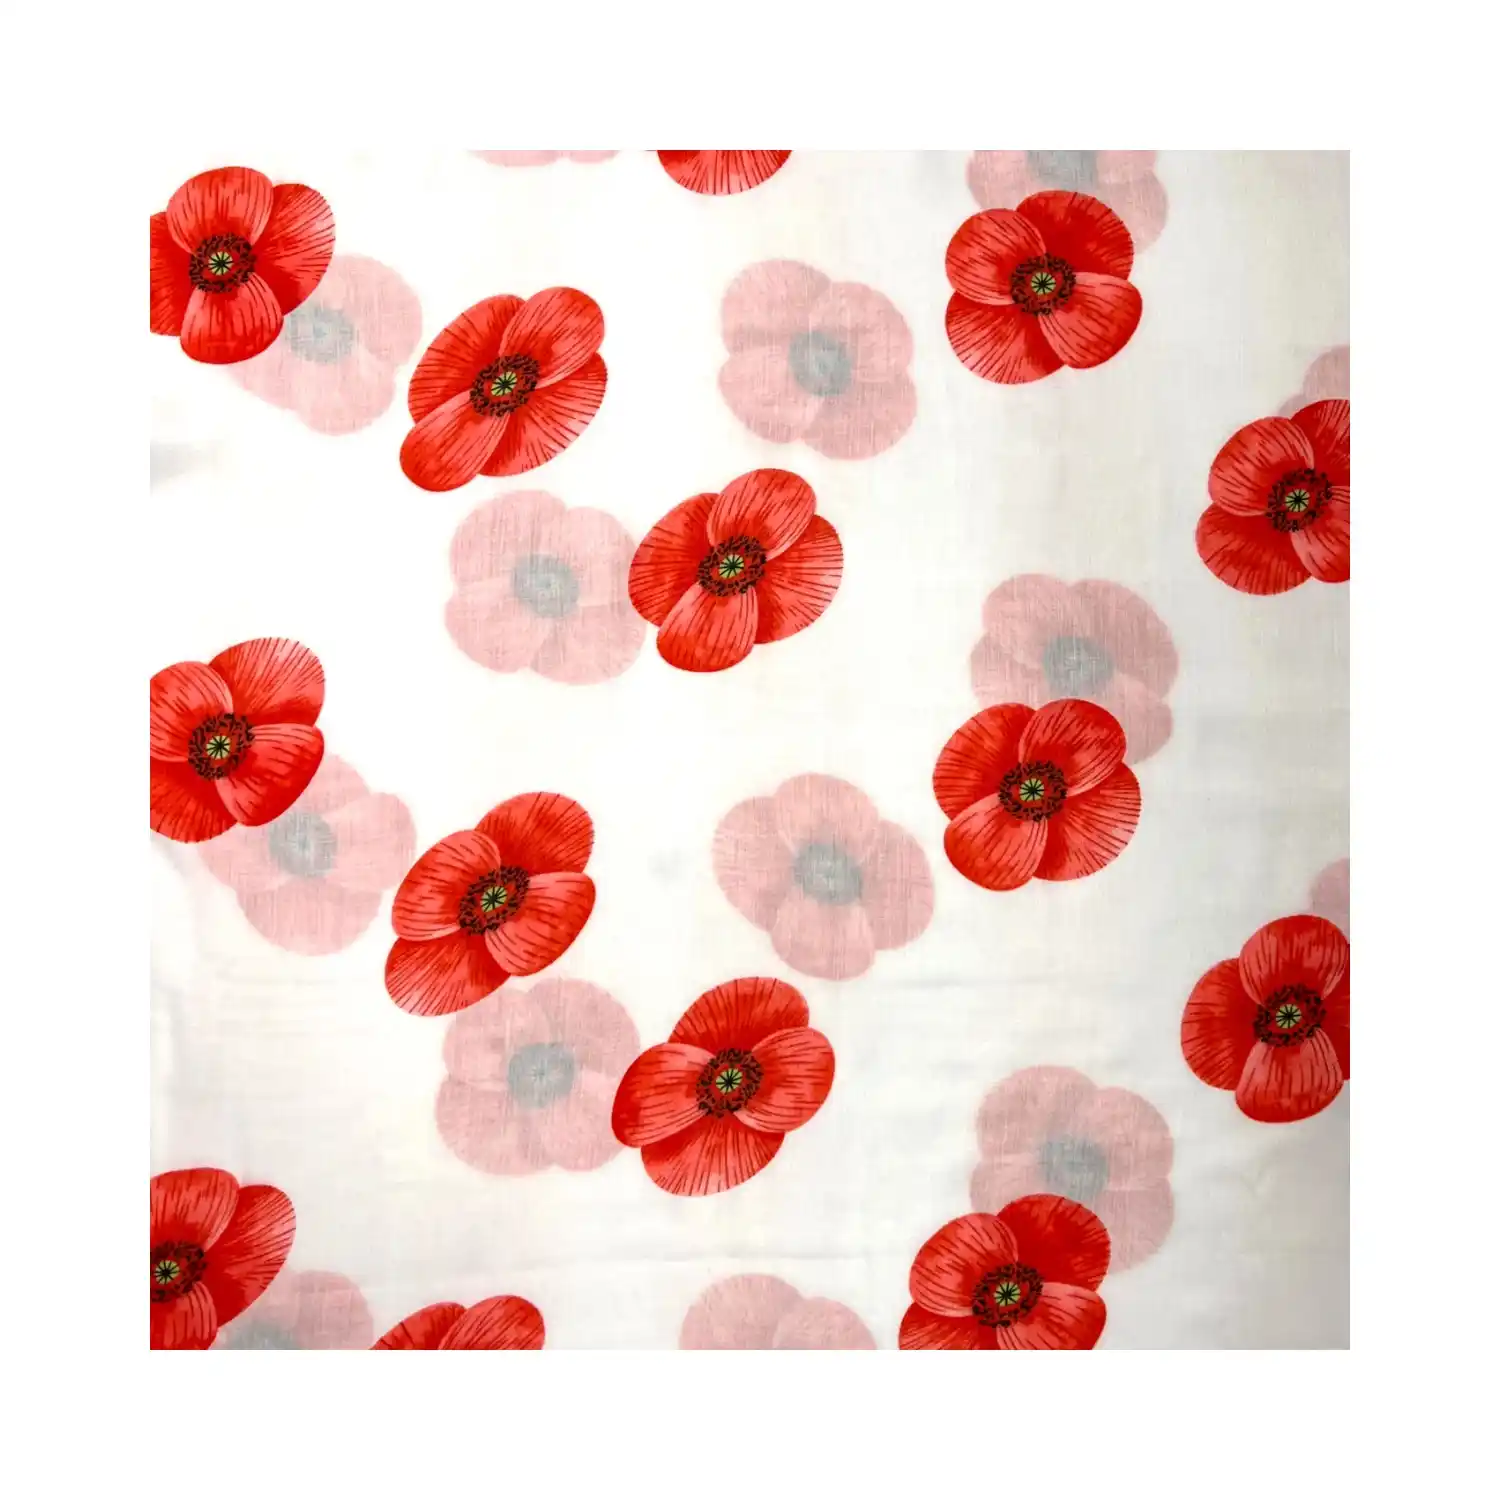 Hvid tørklæde med store røde blomster - 90 x 180 cm i viskose